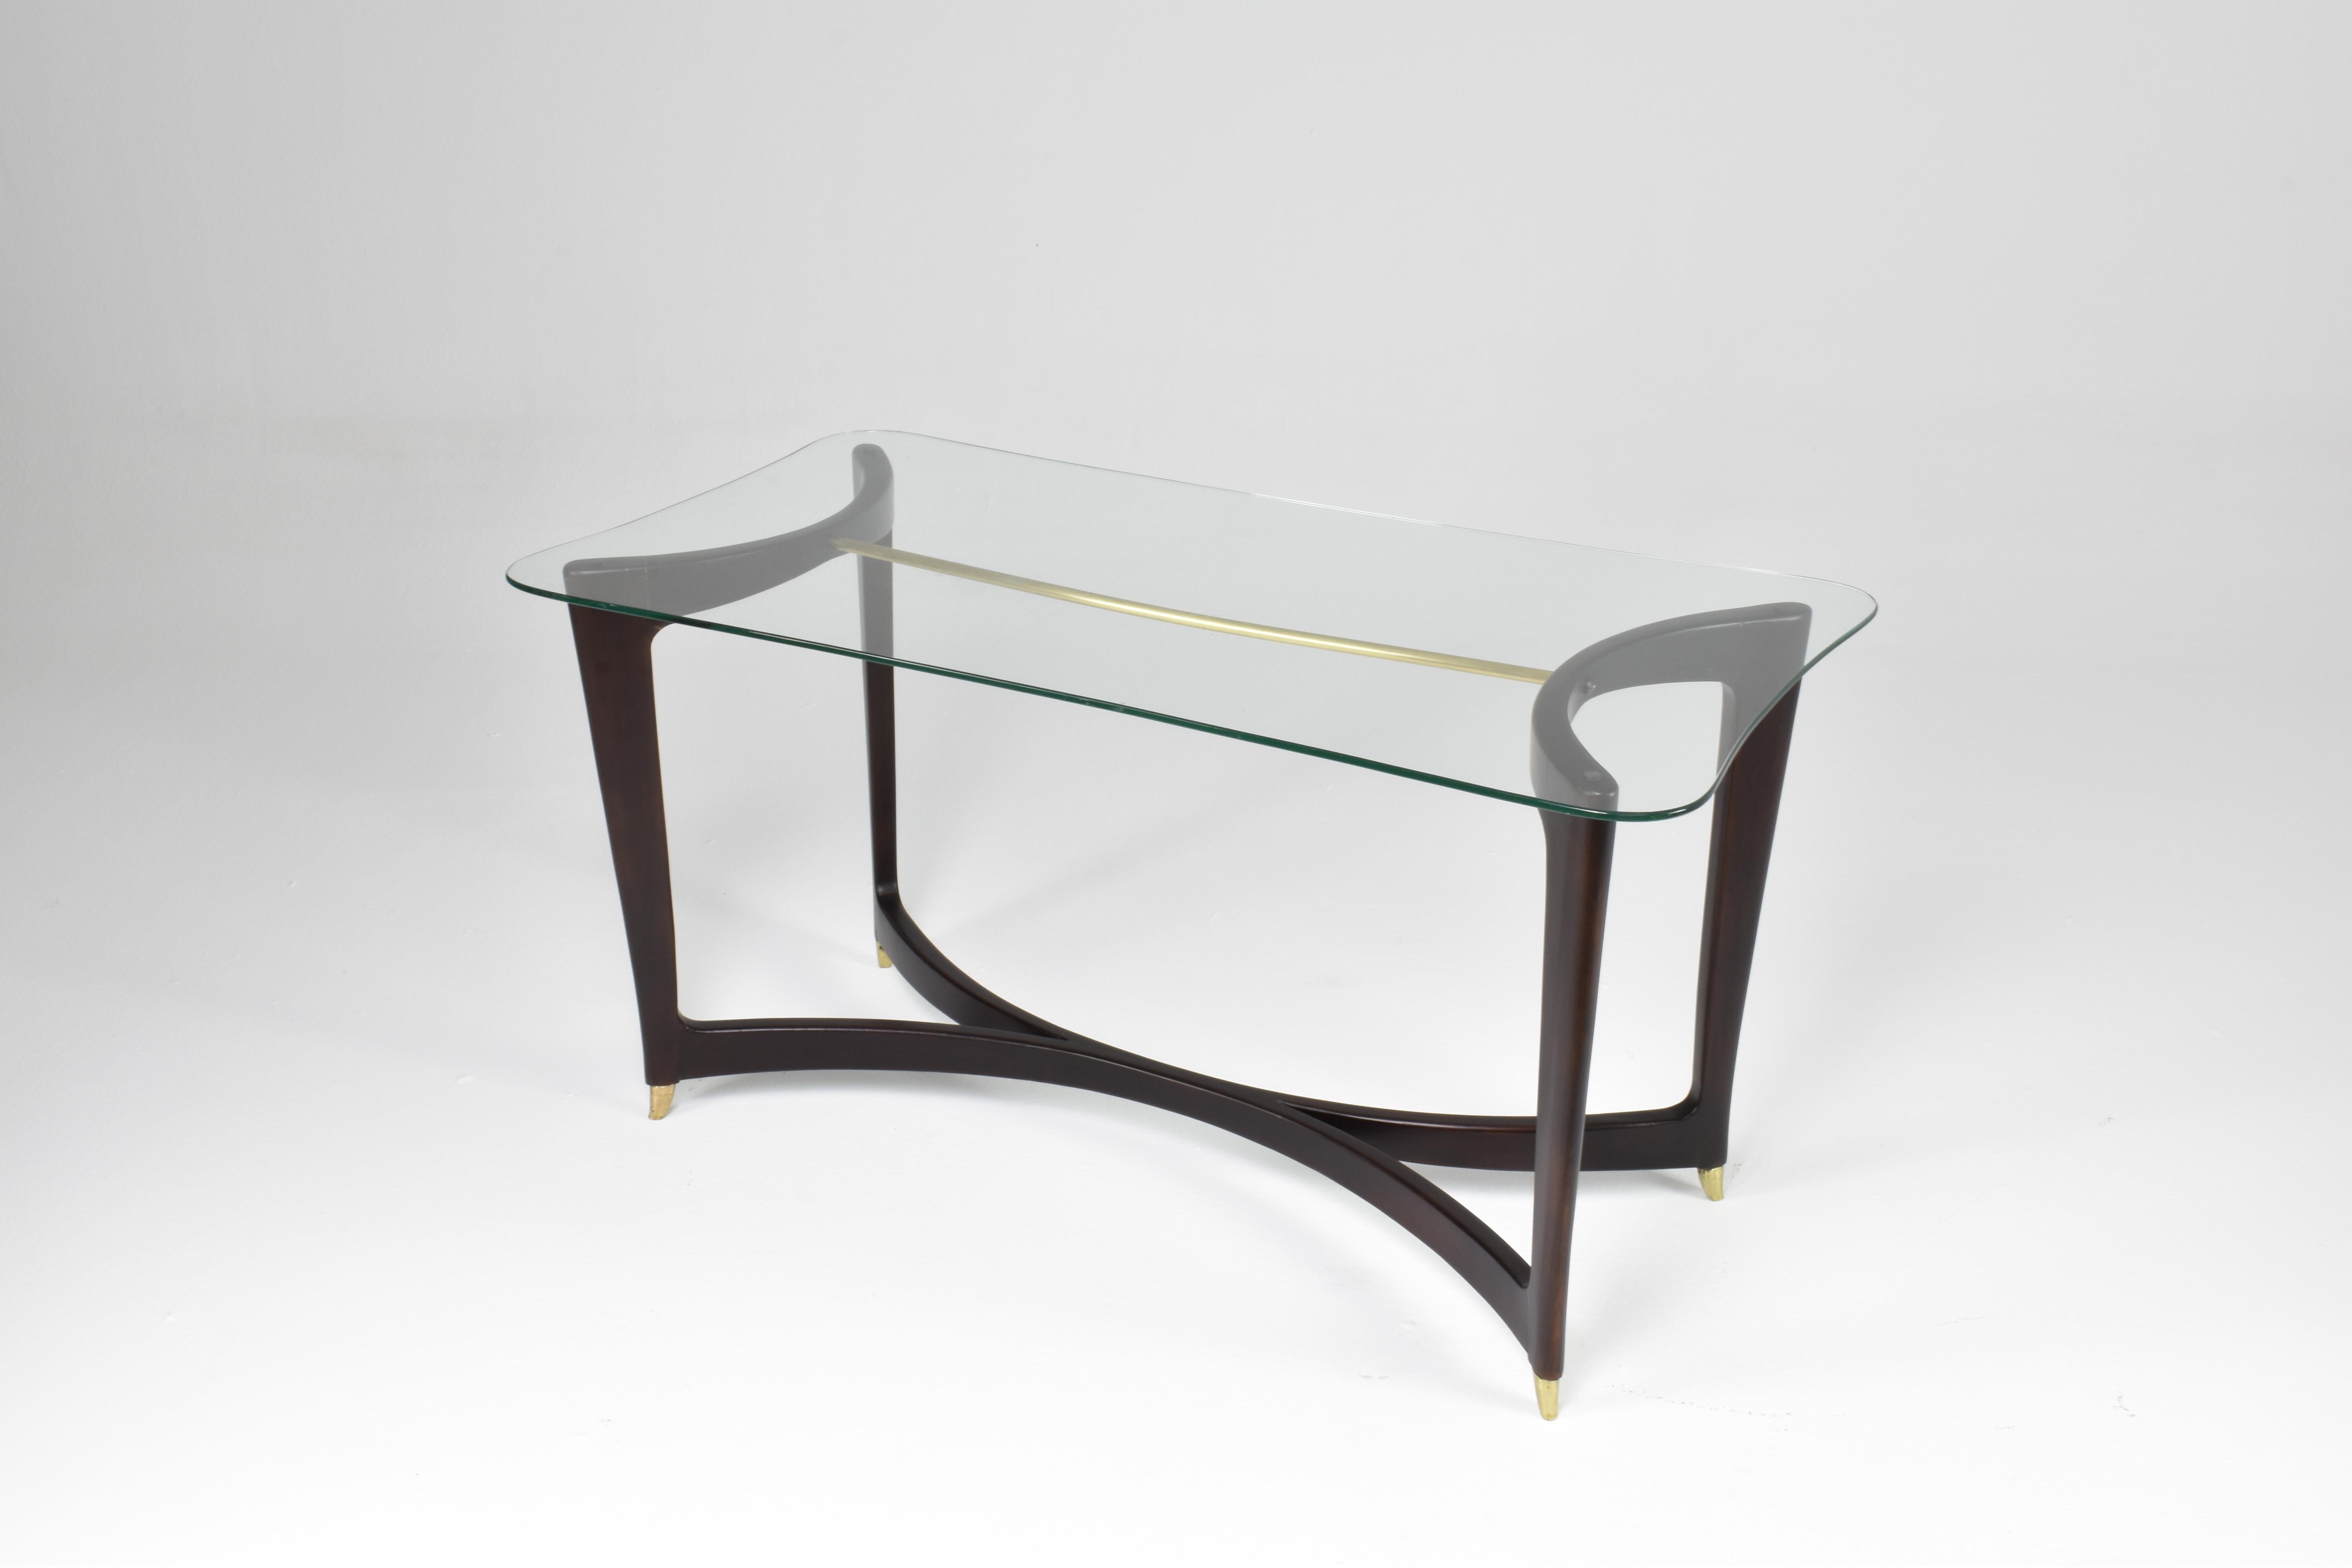 Une belle table basse italienne des années 1950 aux courbes élégantes, un beau plateau en verre souligné par un détail en laiton qui traverse la structure sophistiquée. 
Restauré méticuleusement dans notre atelier. 
Dans le style de Guglielmo